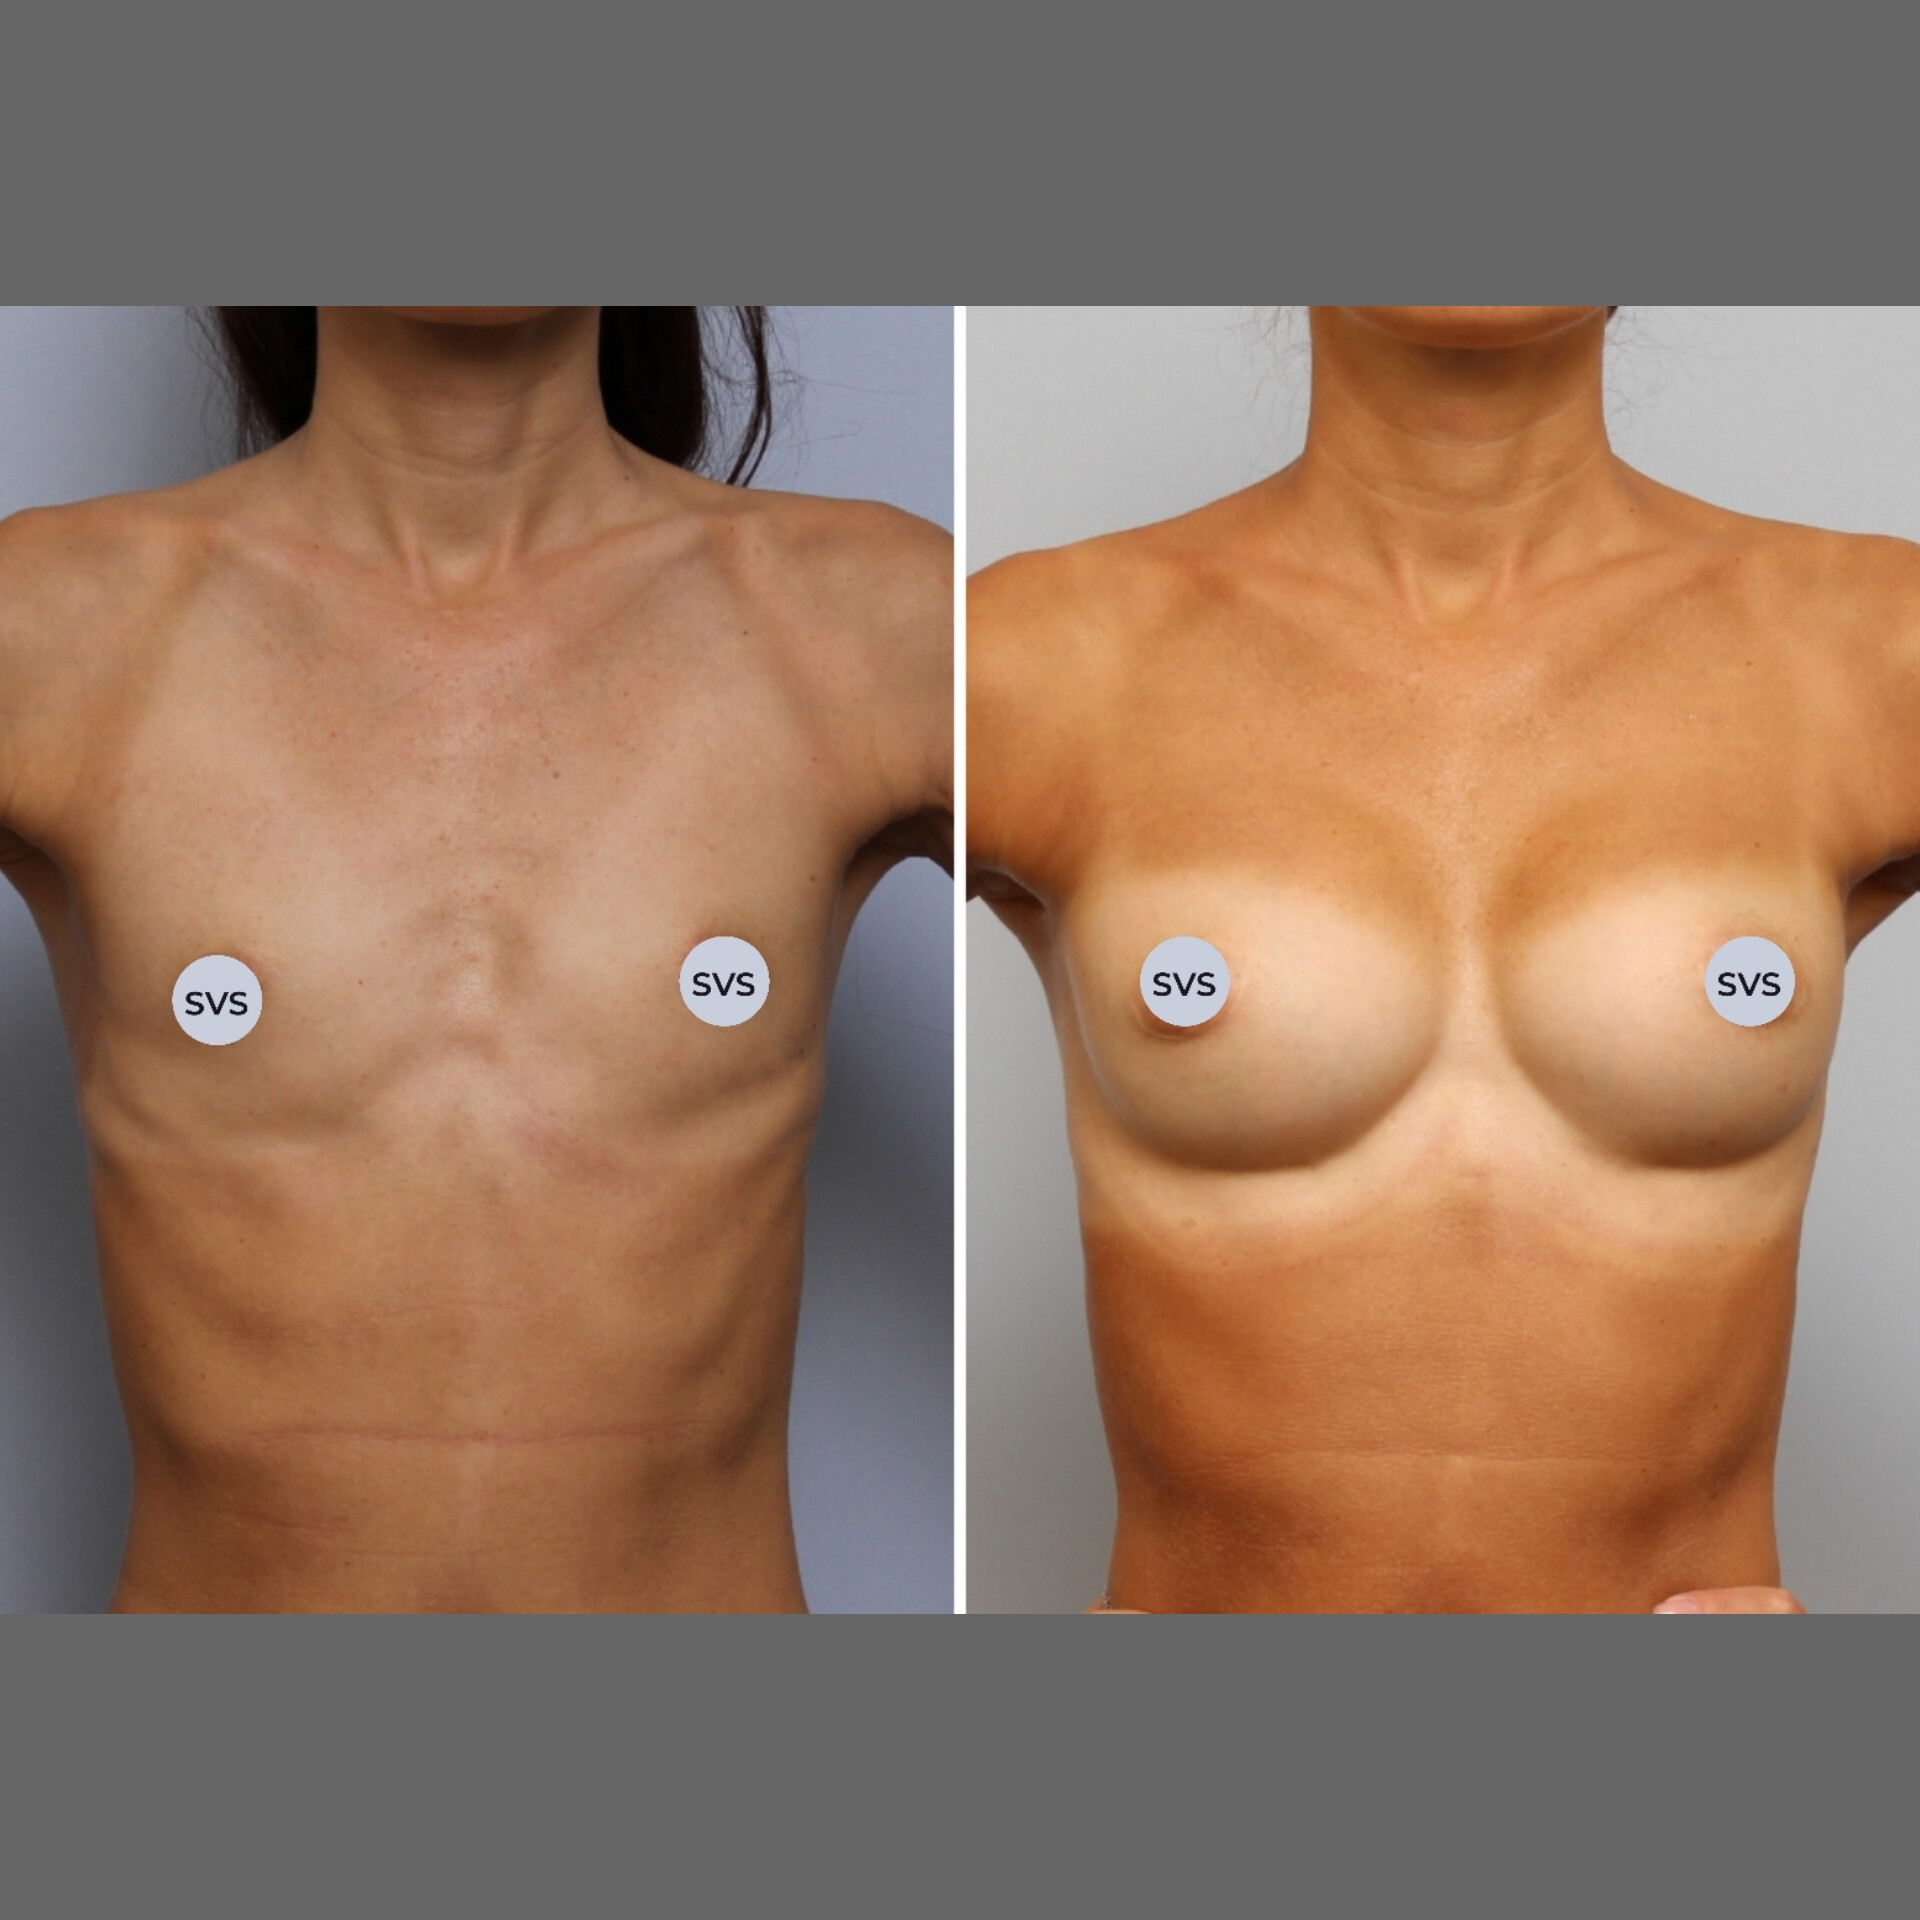 импланты груди третьего размера фото 24